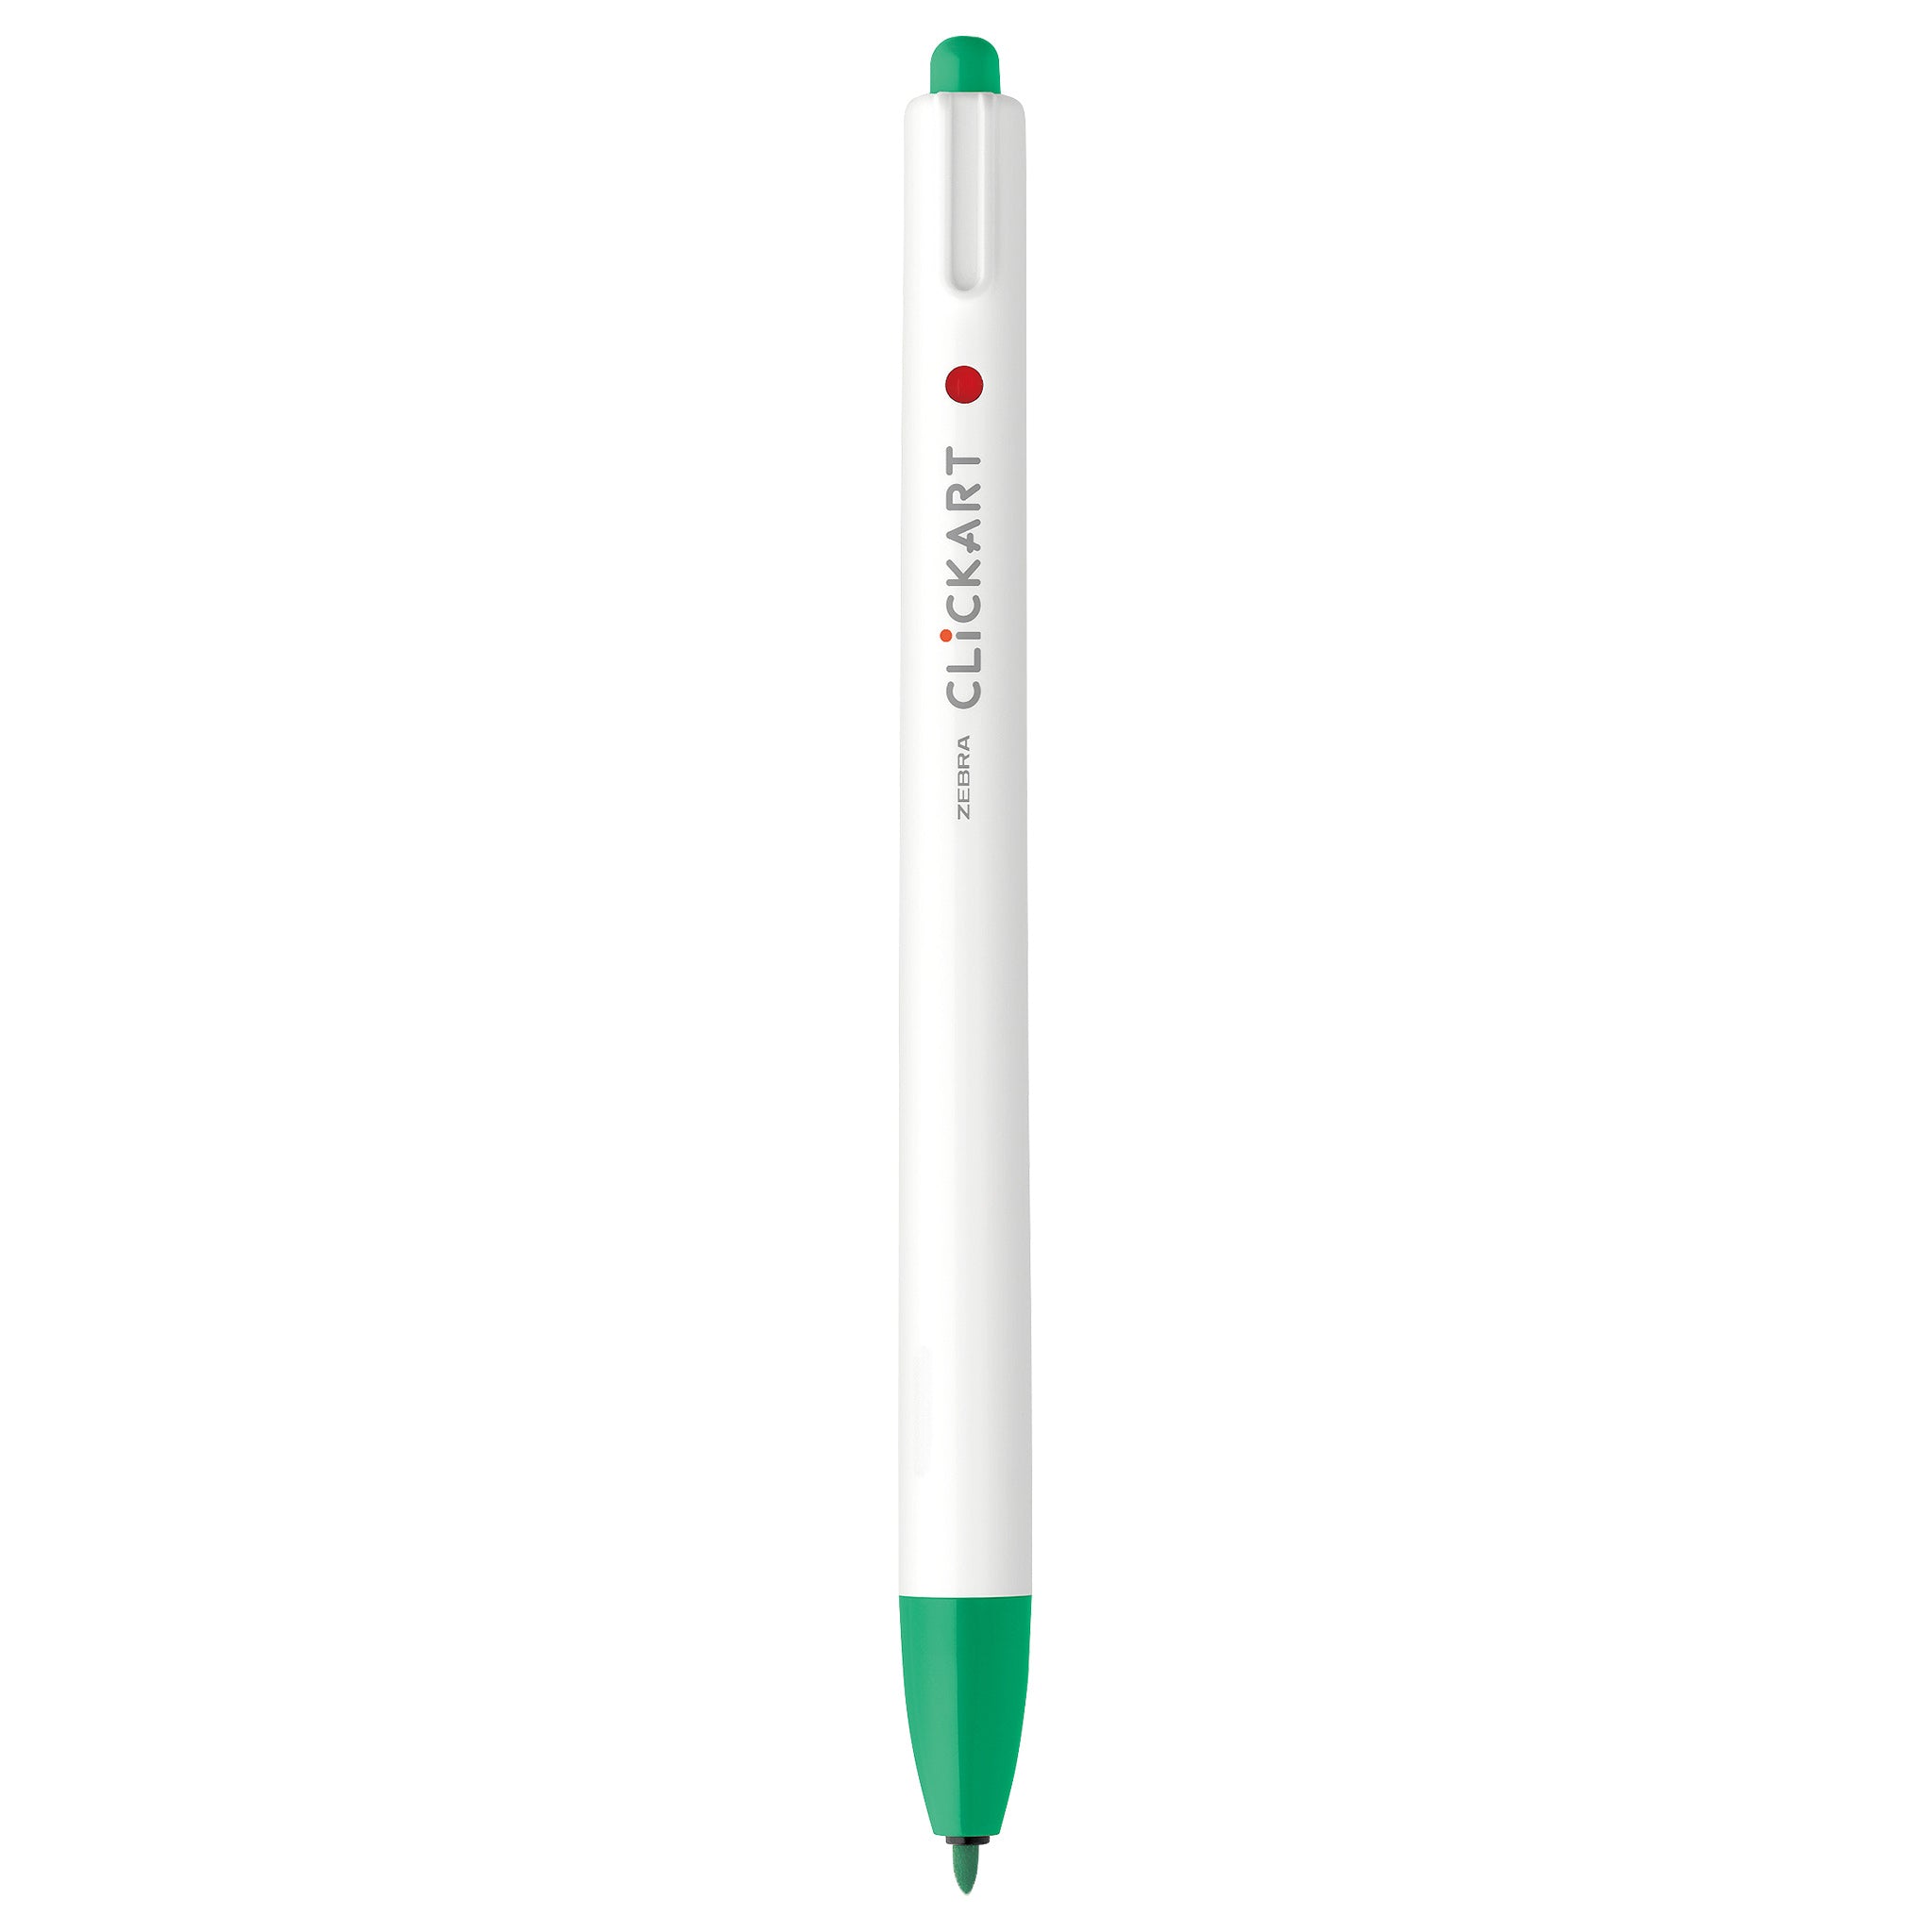 ThinkShop - Zebra Click Art is an innovative fine liner marker pen